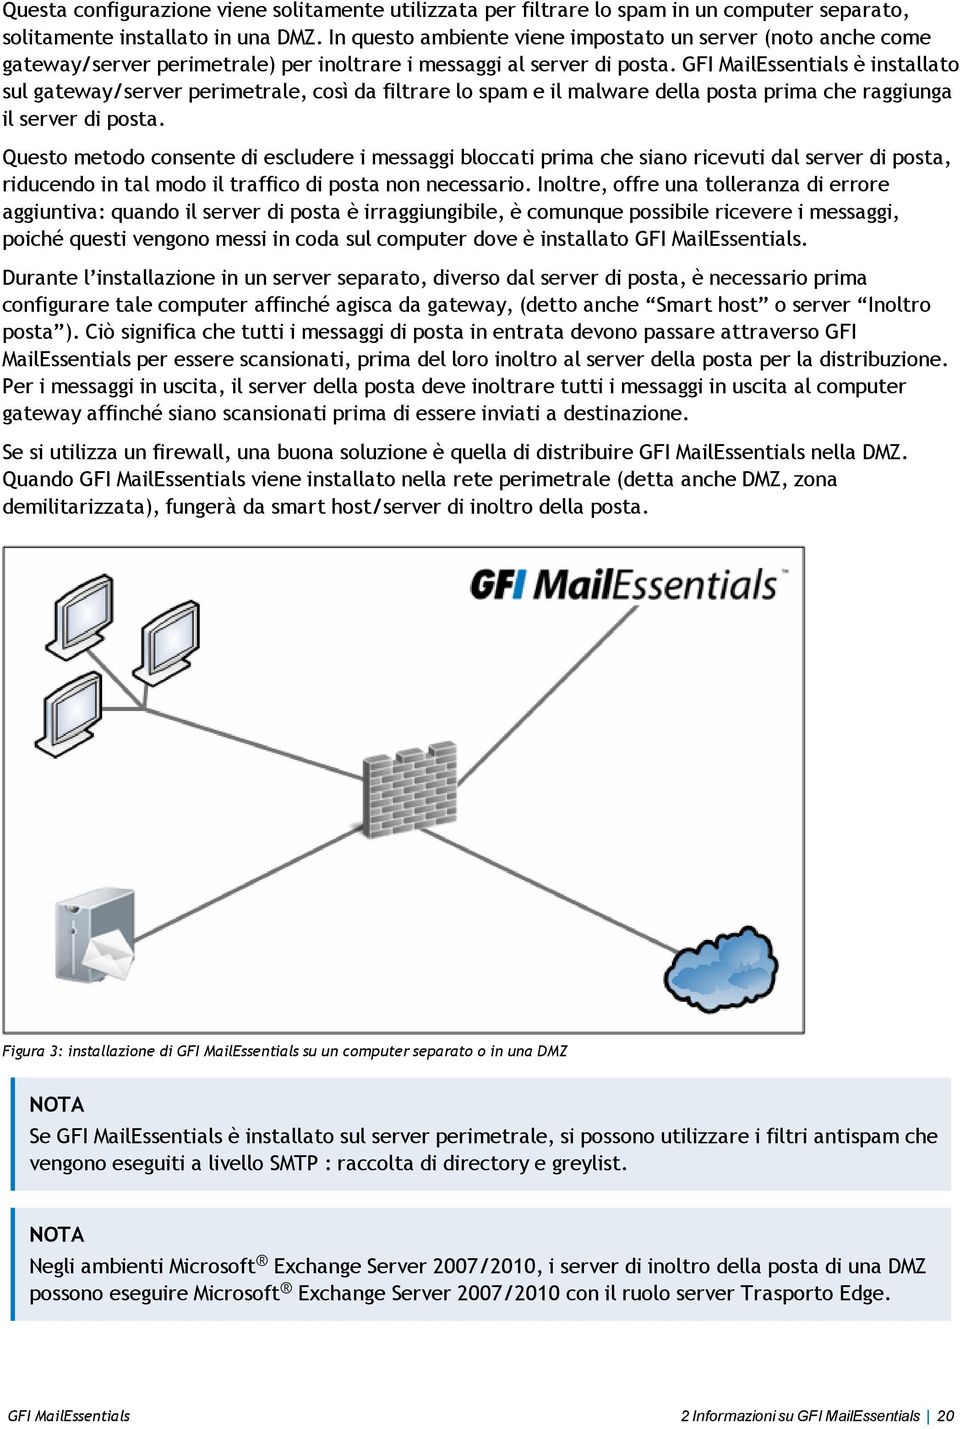 GFI MailEssentials è installato sul gateway/server perimetrale, così da filtrare lo spam e il malware della posta prima che raggiunga il server di posta.